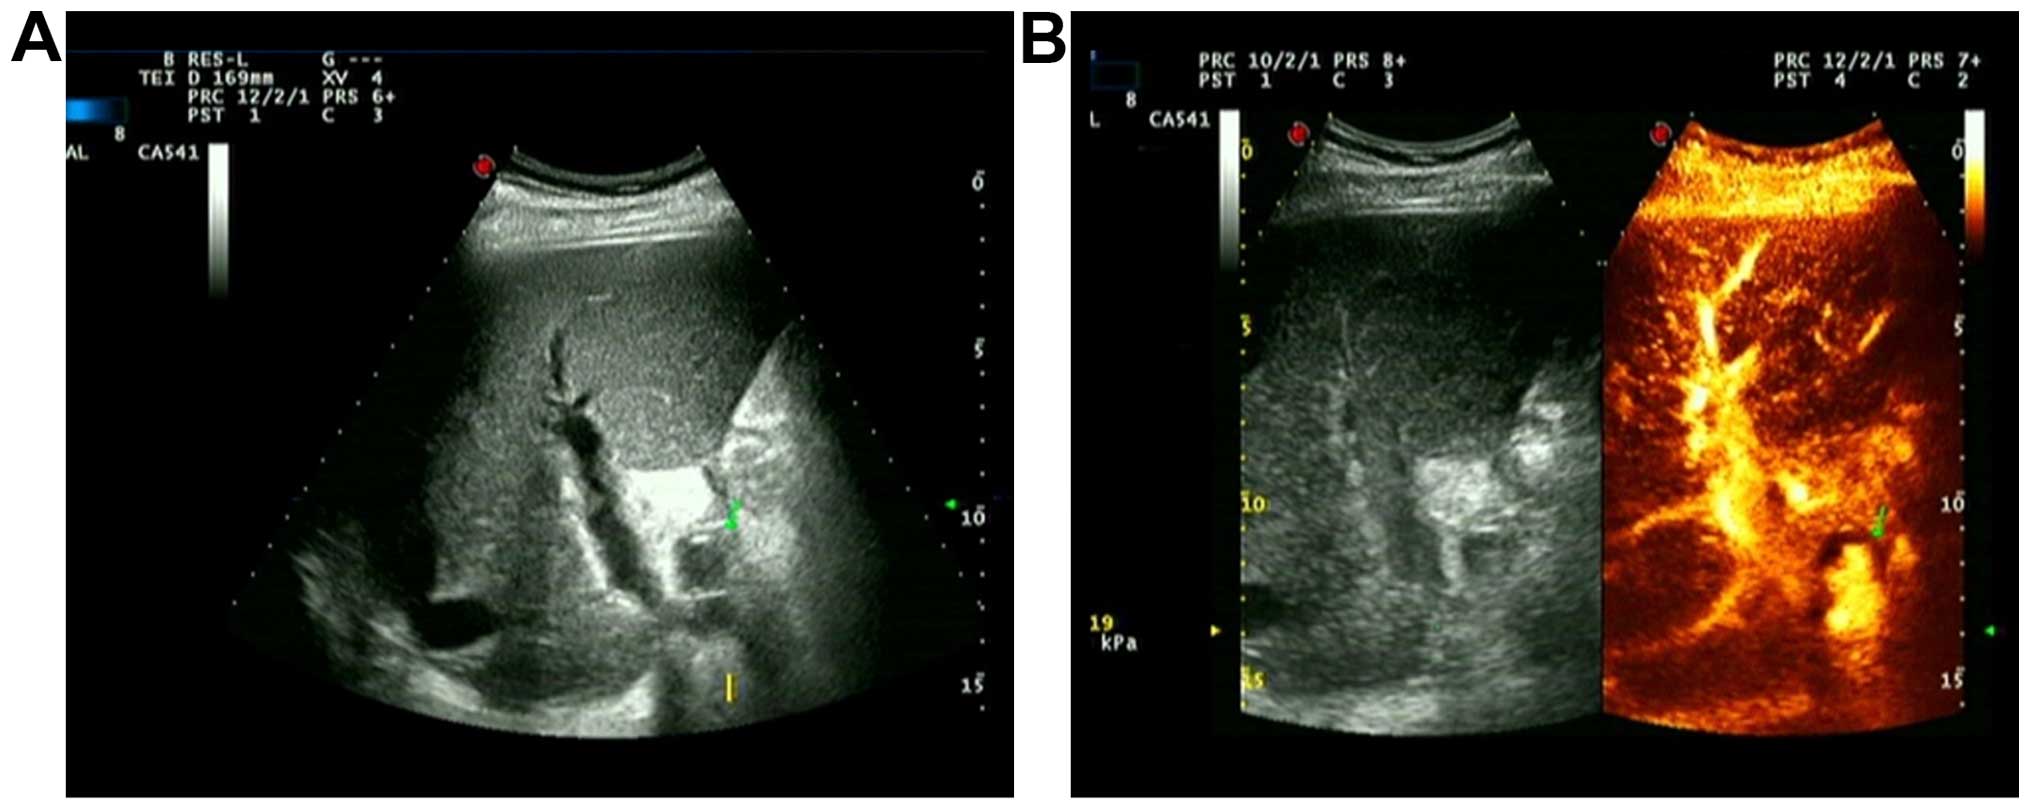 hepatic artery ultrasound